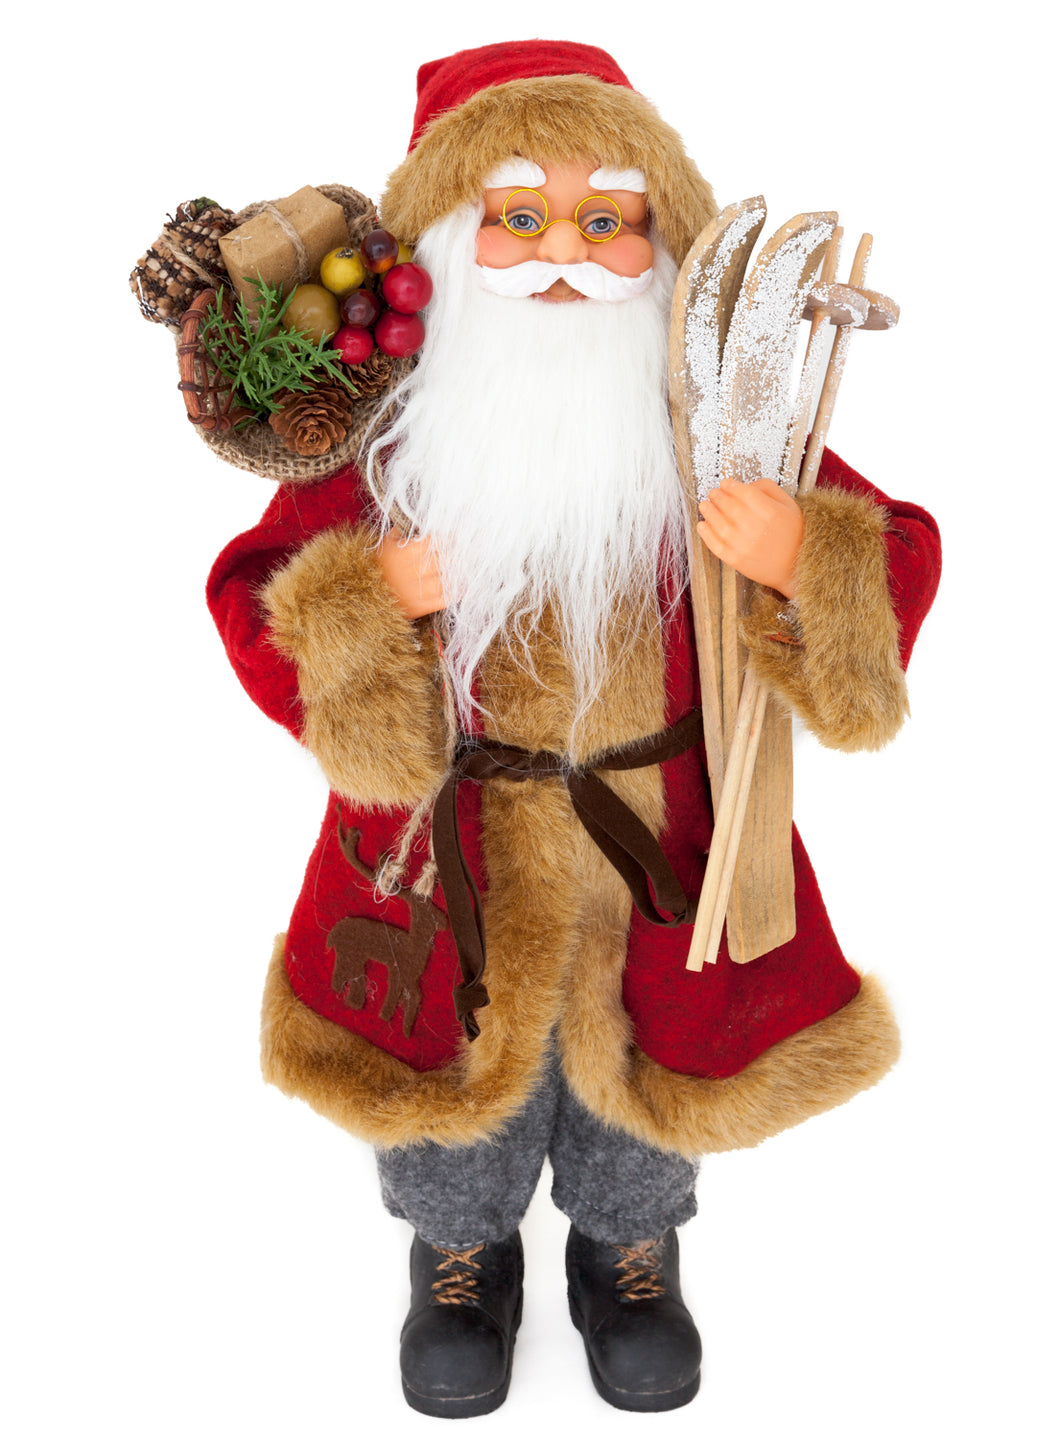 Weihnachtsmann mit Skier und Geschenkesack, 45 cm hoch, Sehr Detailliert - Perfekte Dekoration